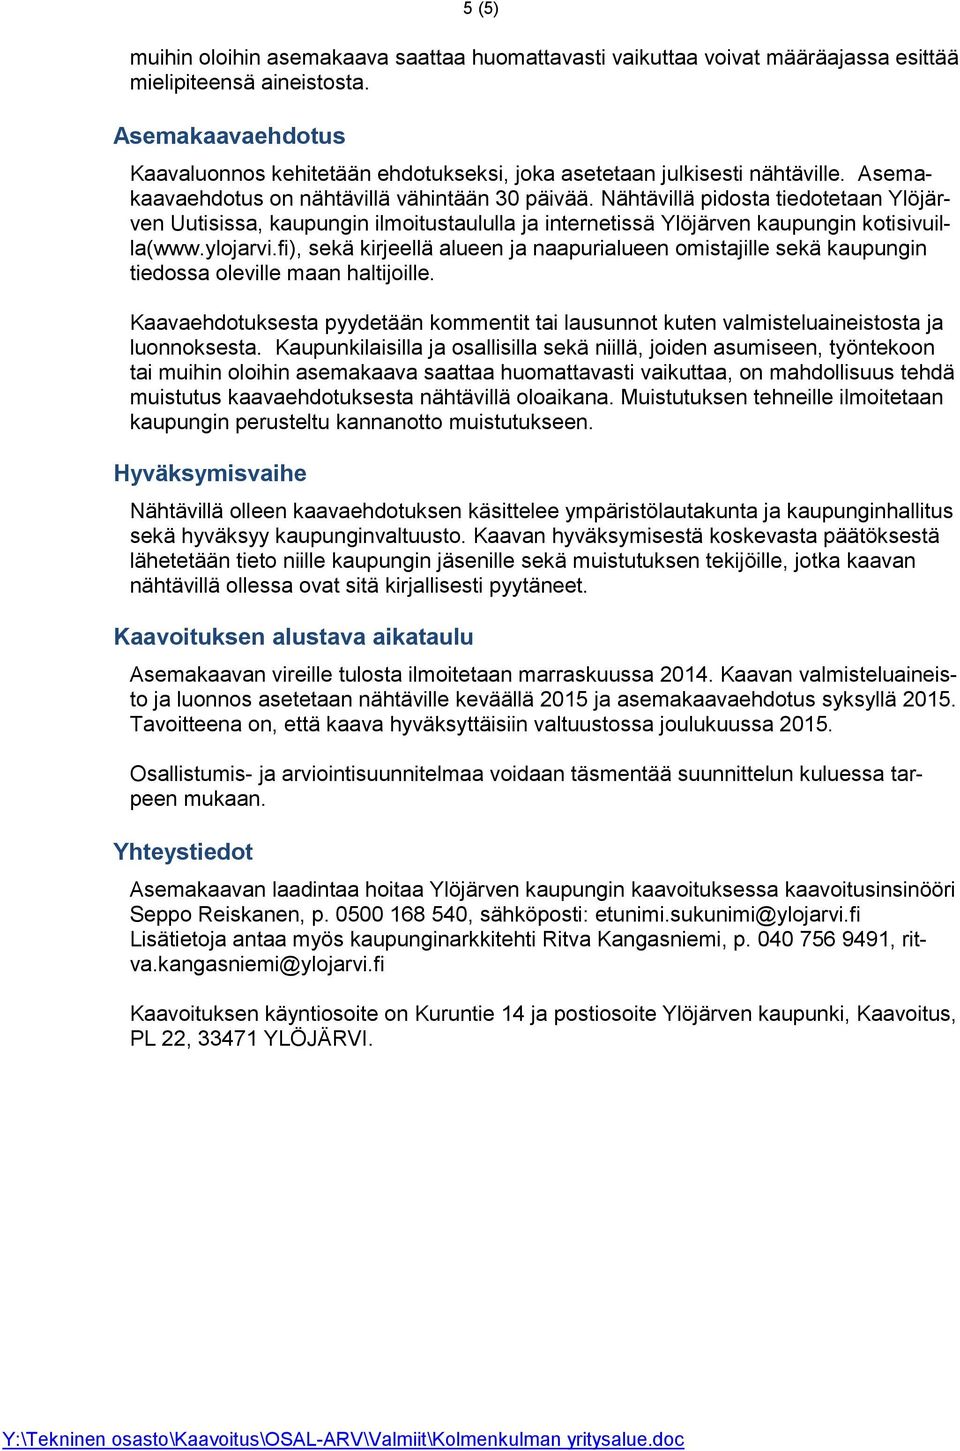 Nähtävillä pidosta tiedotetaan Ylöjärven Uutisissa, kaupungin ilmoitustaululla ja internetissä Ylöjärven kaupungin kotisivuilla(www.ylojarvi.